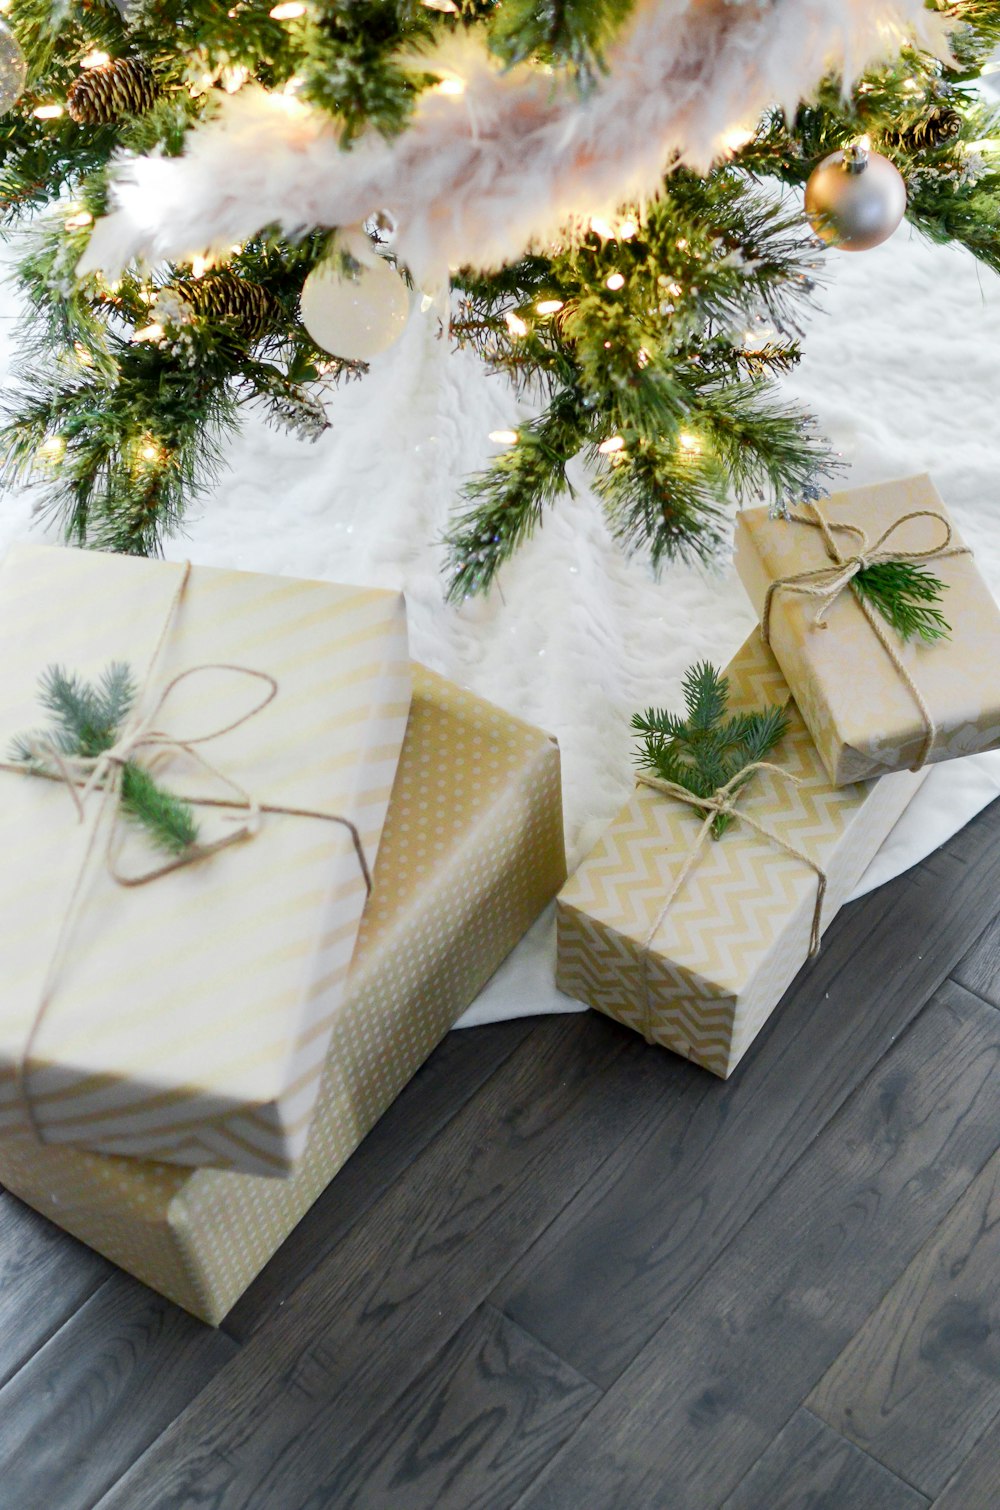 quatro caixas de presente sob a árvore de Natal